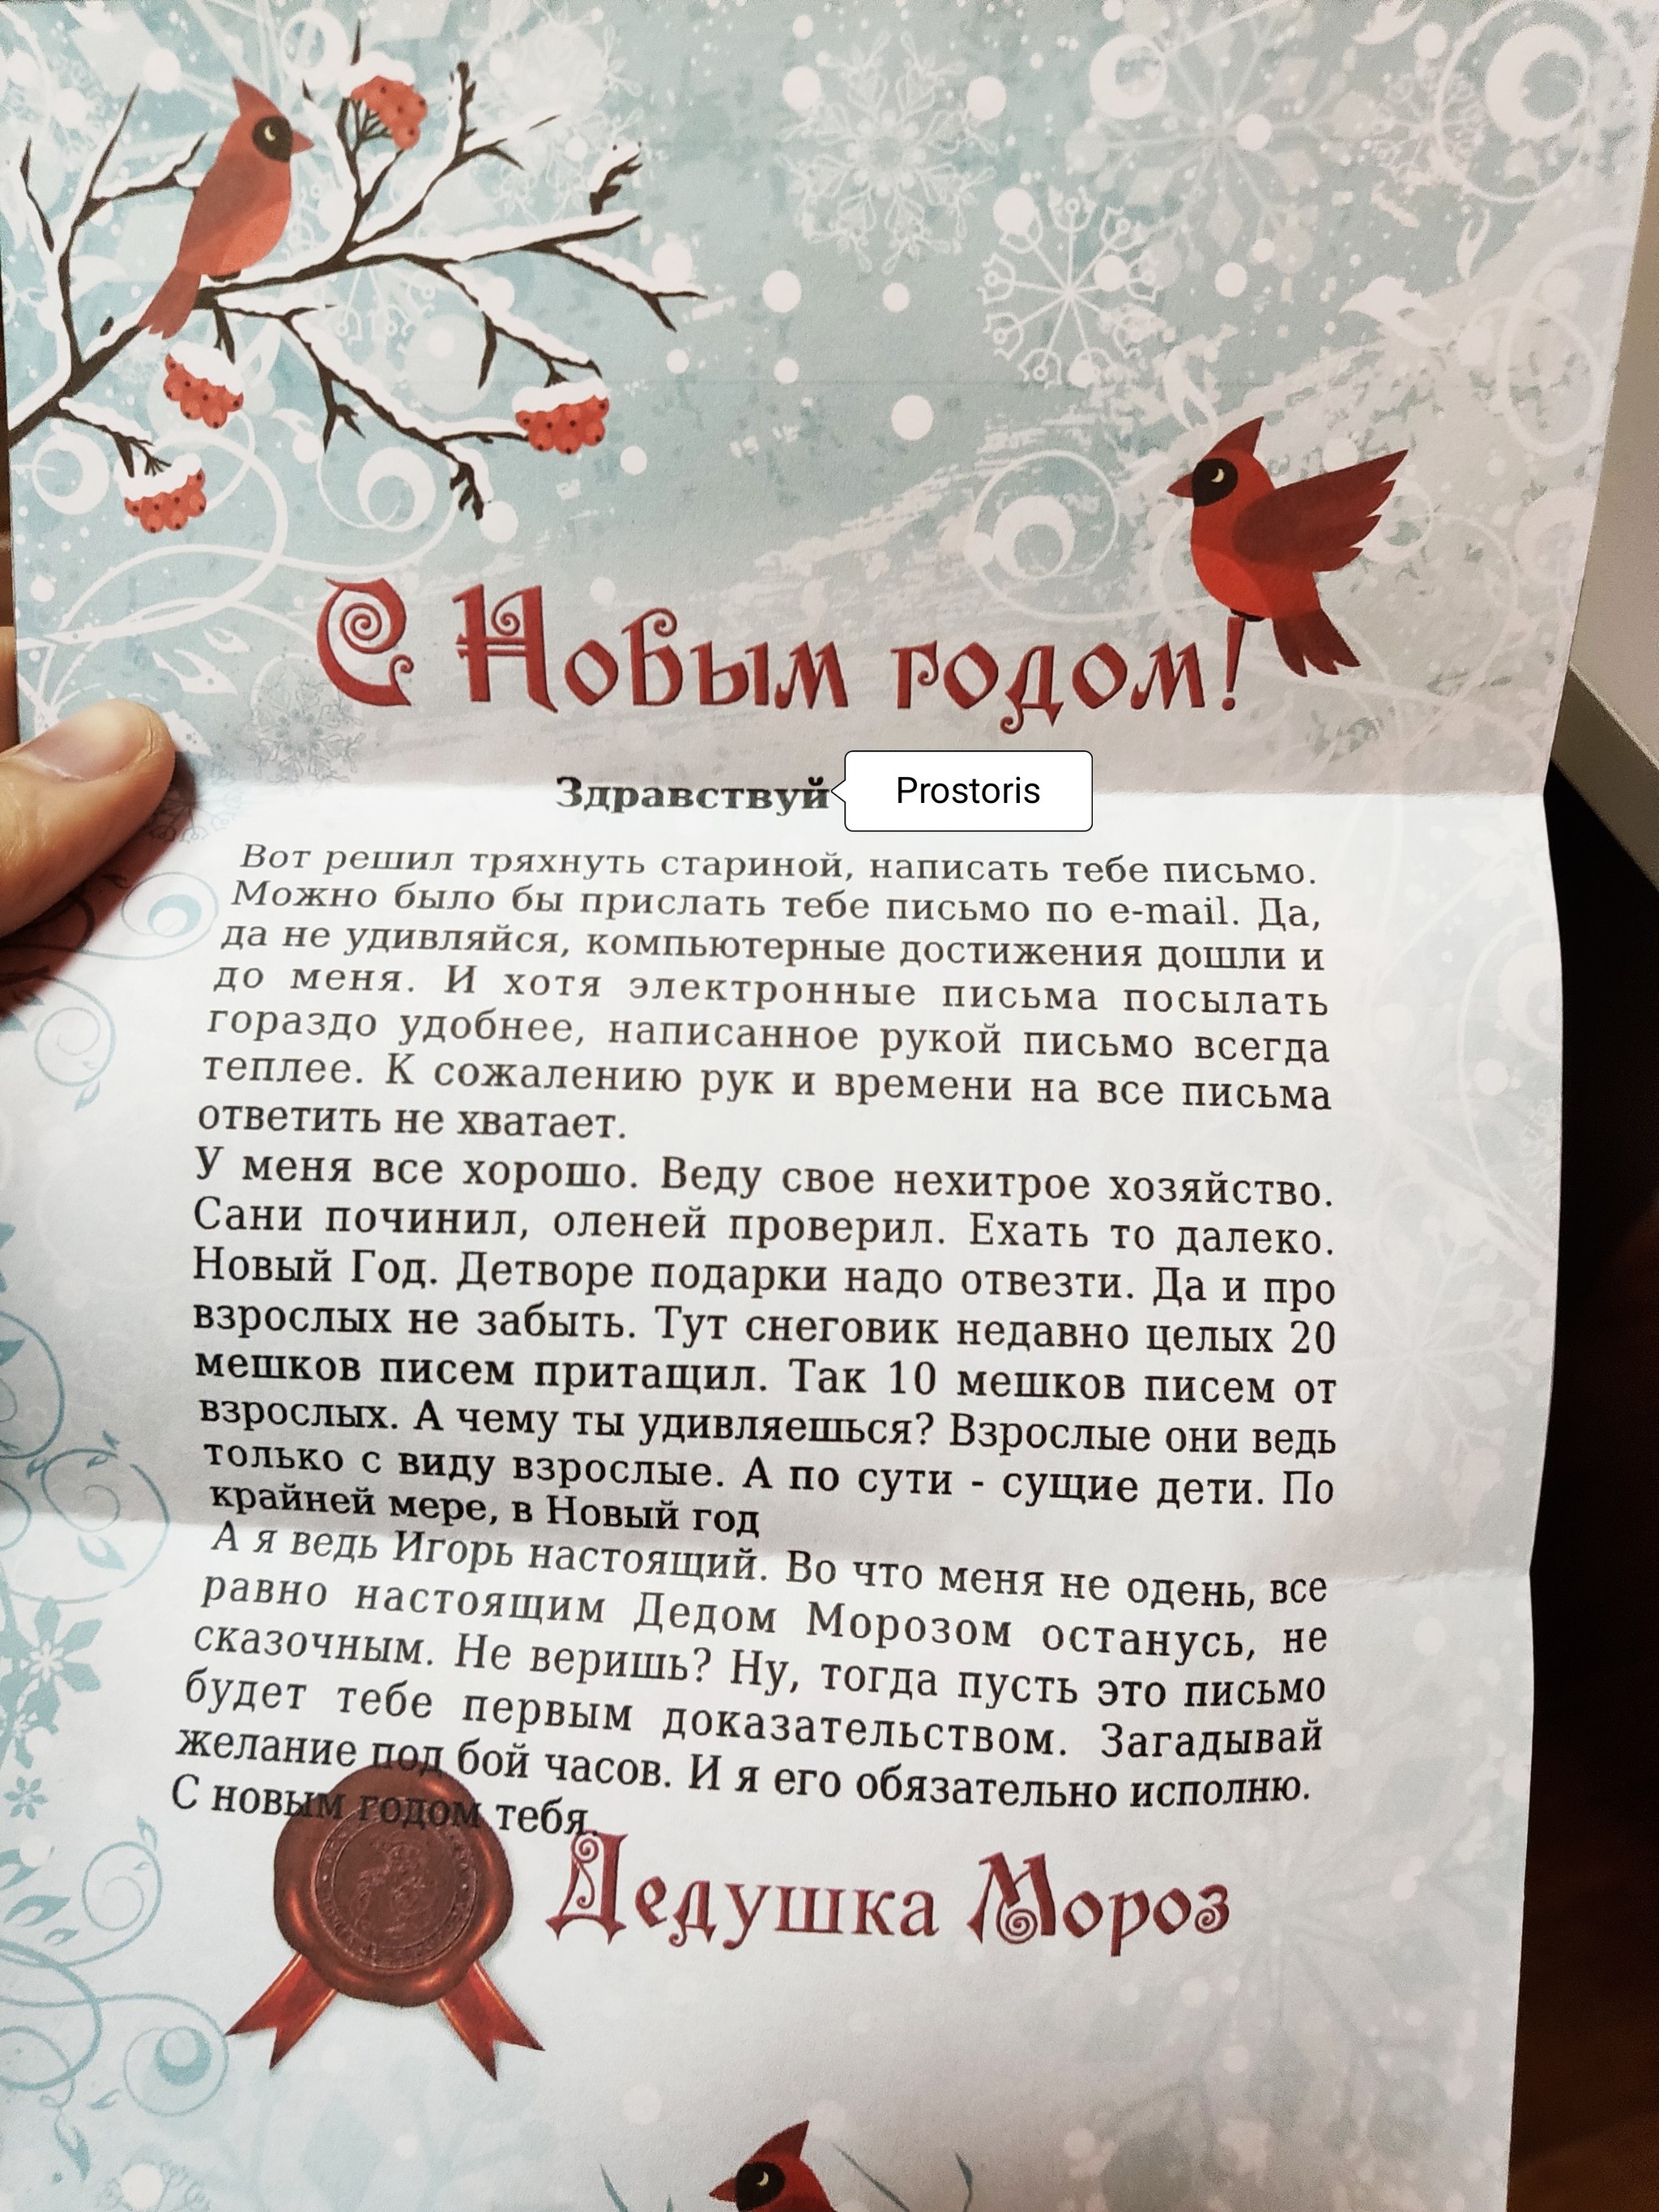 ADM 19/20 Kirov Moscow - My, Gift exchange report, New Year's gift exchange, Thank you, Longpost, Secret Santa, Gift exchange